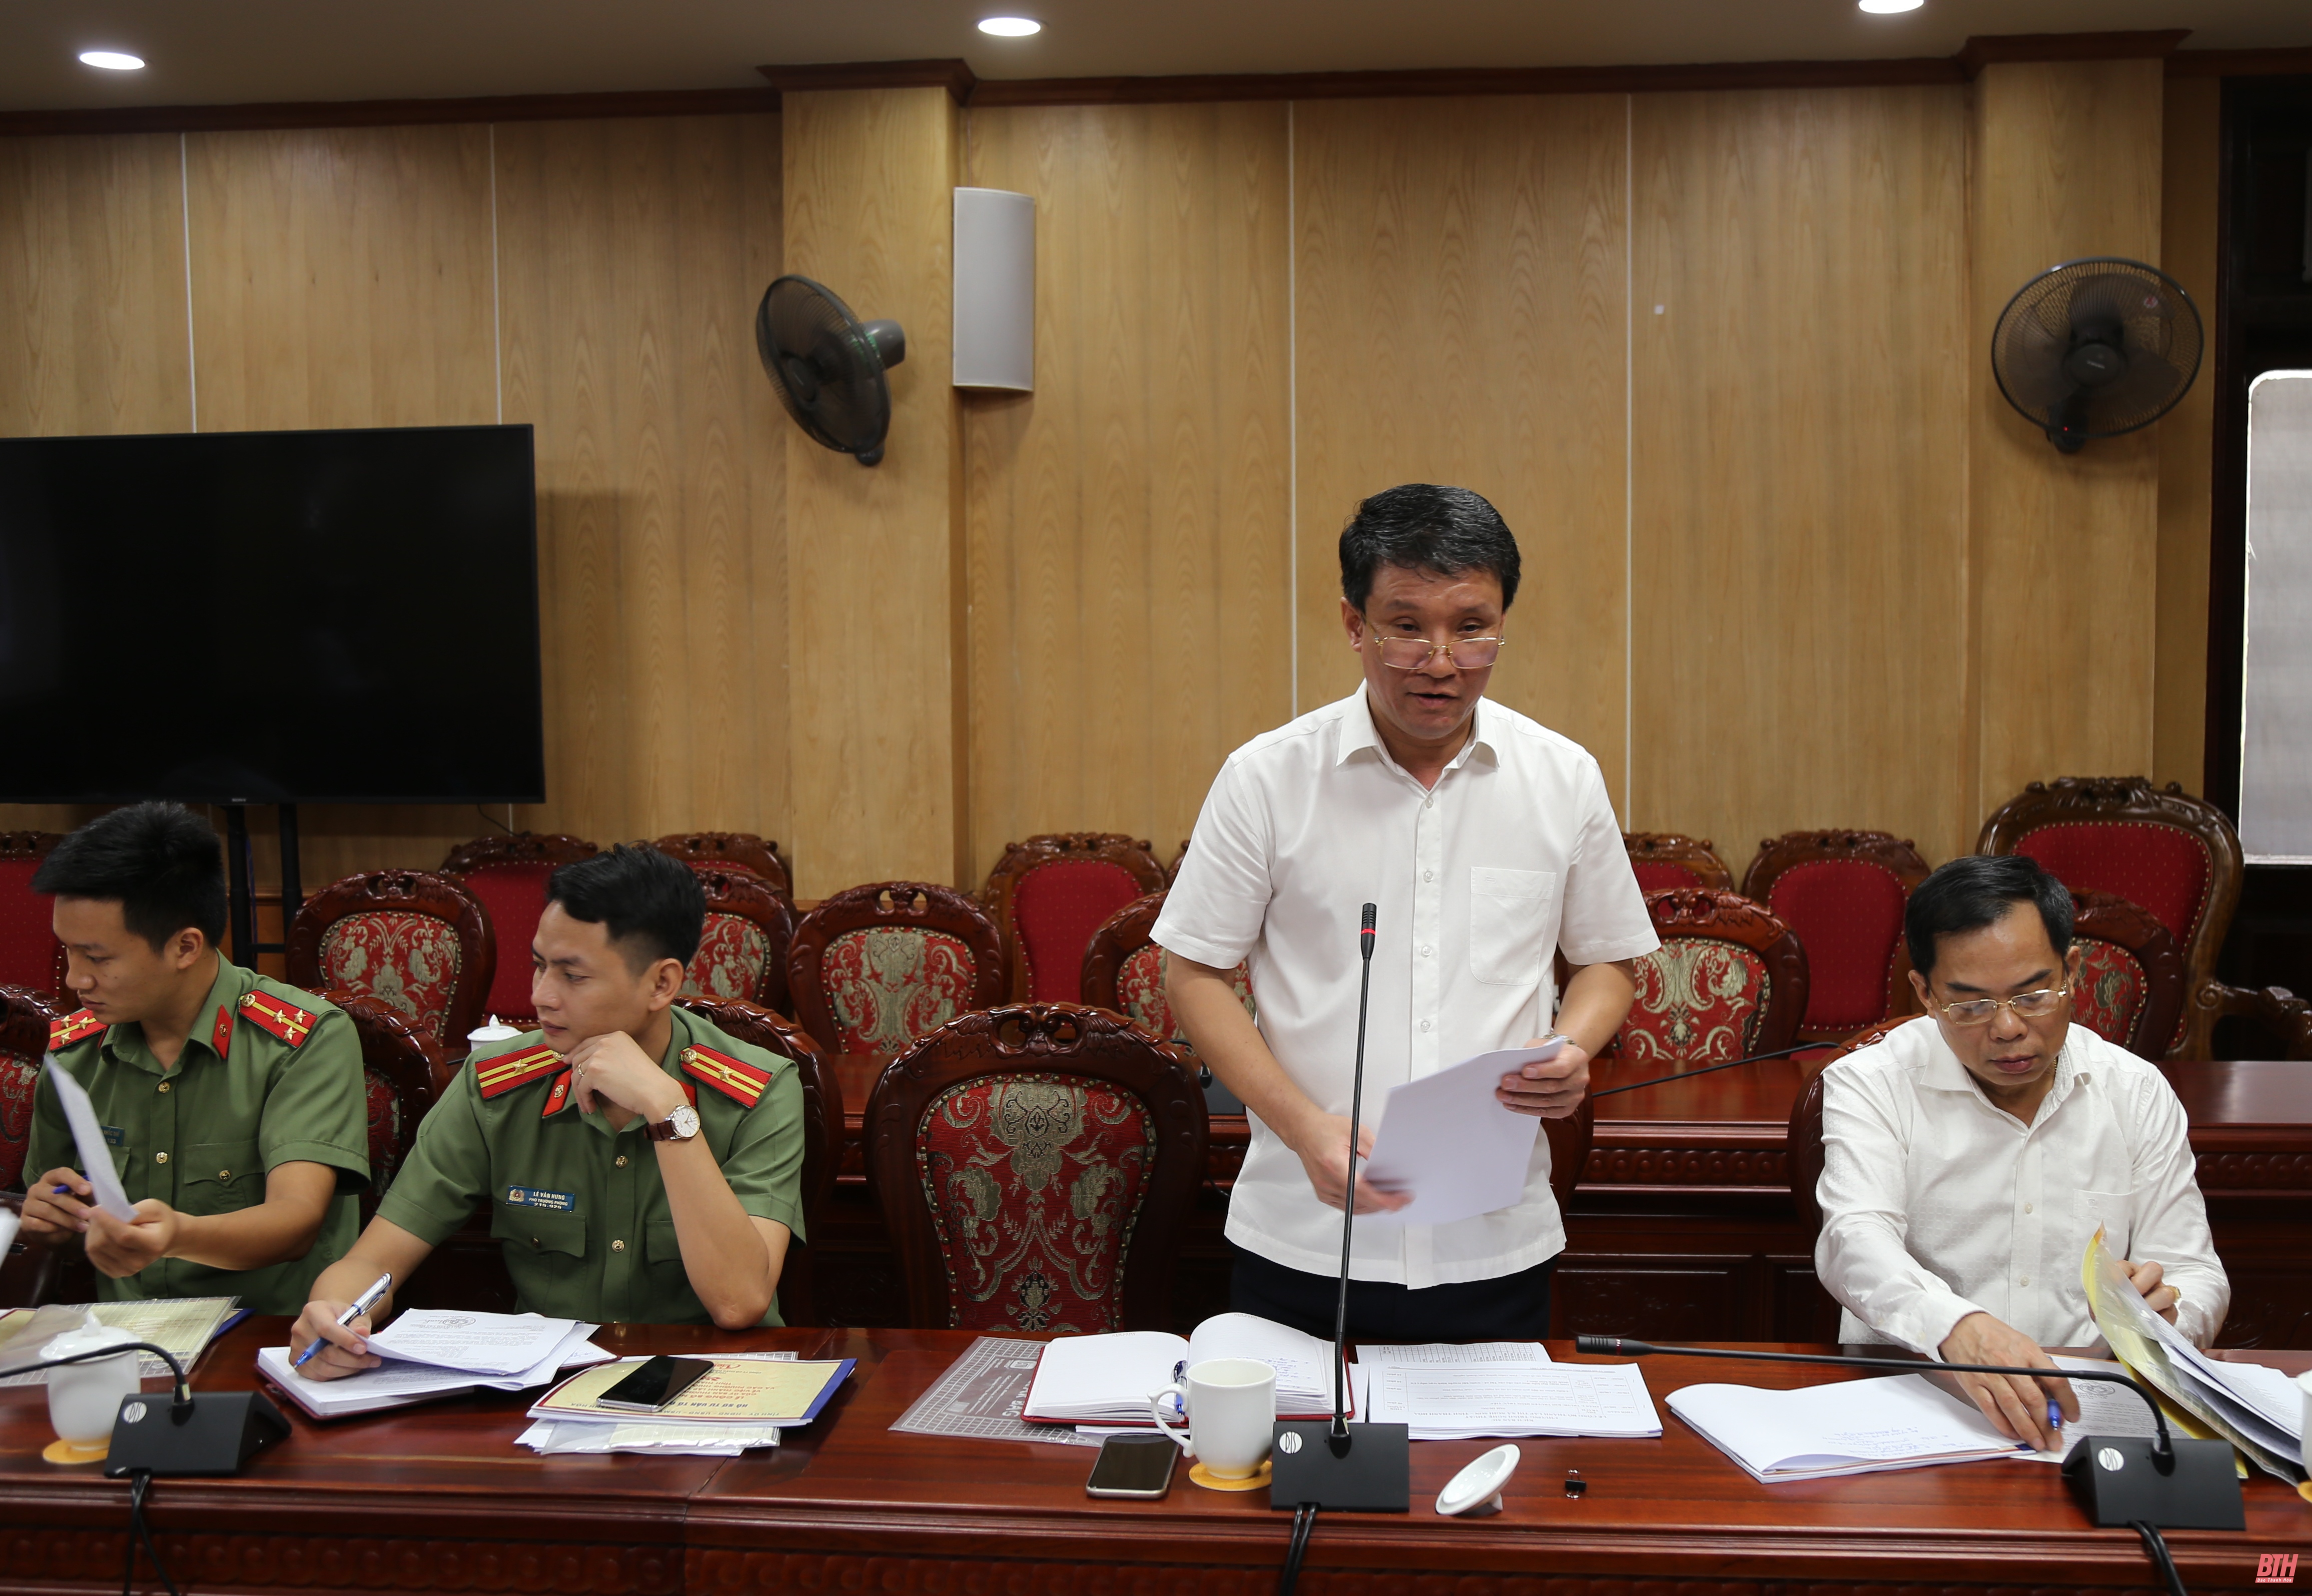 Lễ công bố thành lập thị xã Nghi Sơn được tổ chức vào tối 31 - 7